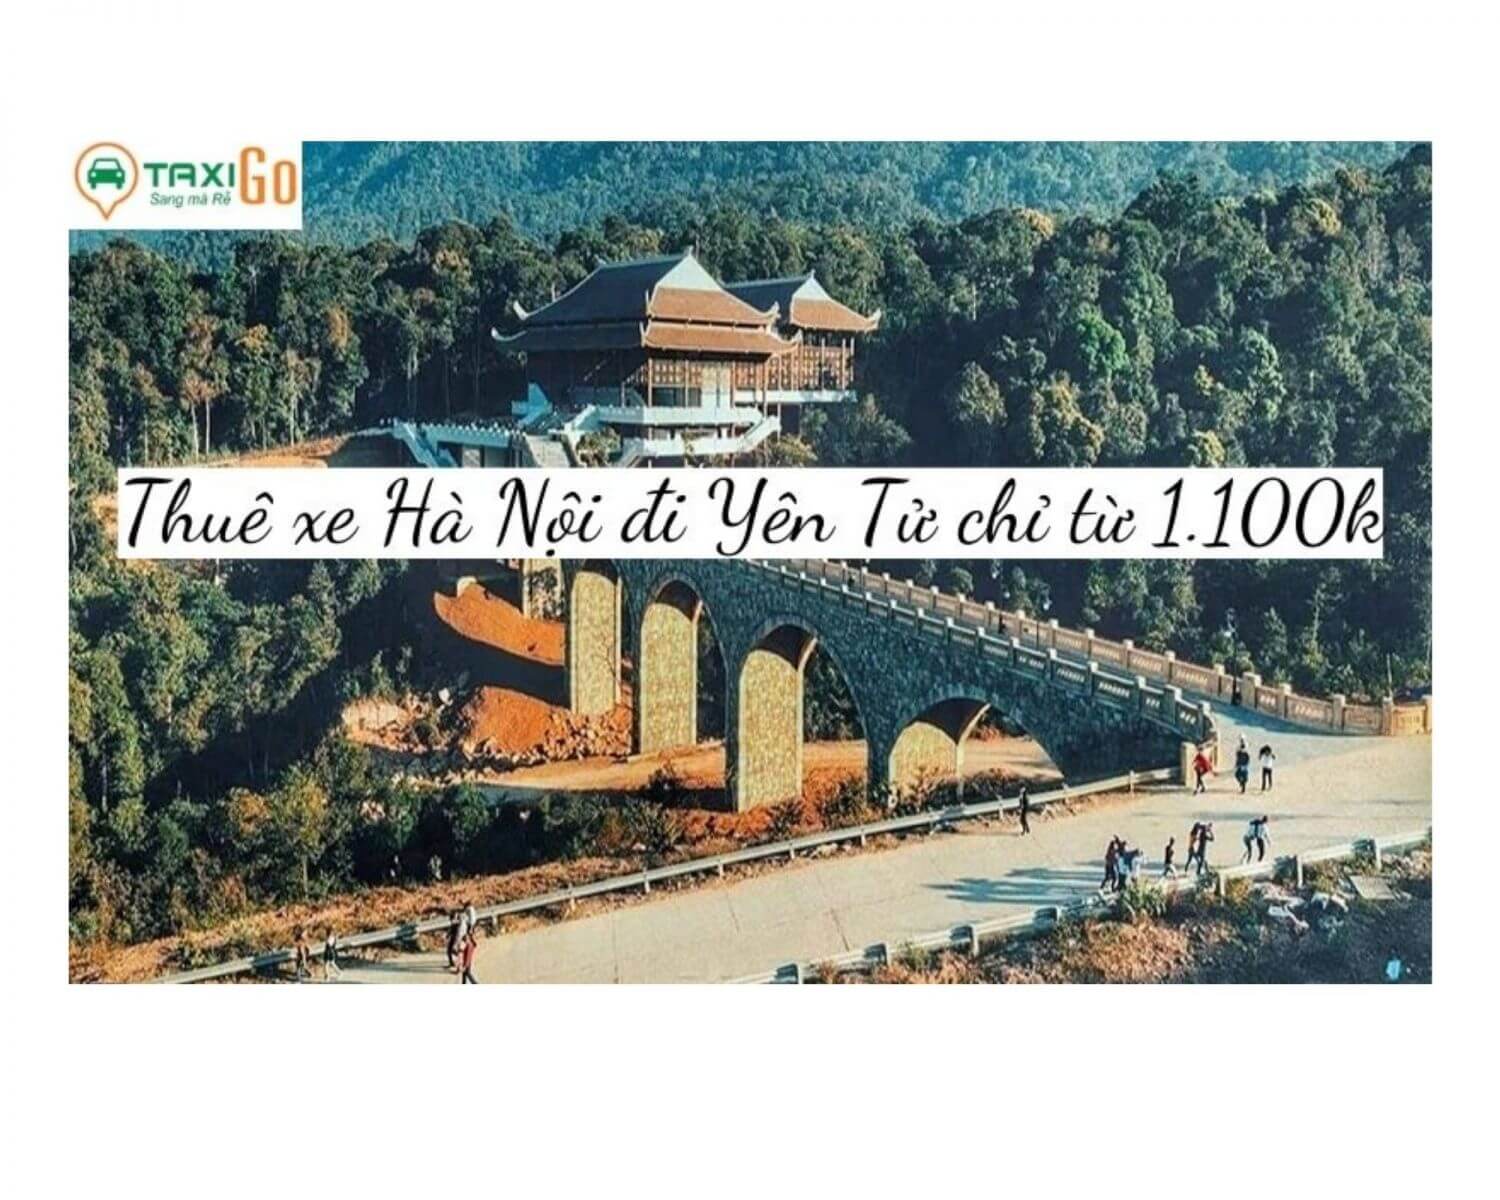 THUÊ XE riêng Hà Nội đi Yên Tử - Quảng Ninh chỉ từ 1.050k- TaxiGo.vn